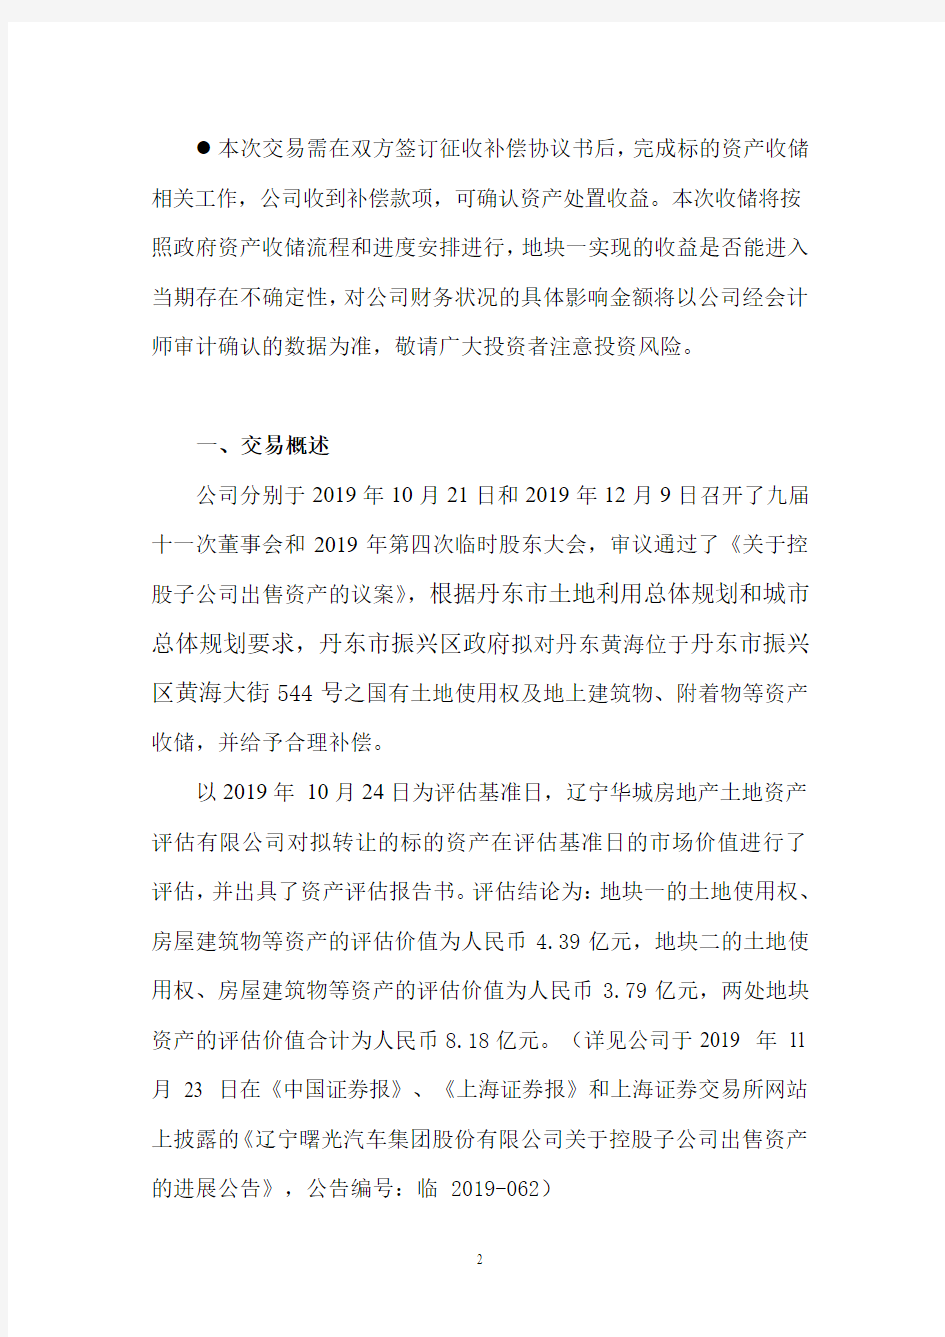 辽宁曙光汽车集团股份有限公司关于控股子公司出售资产的进